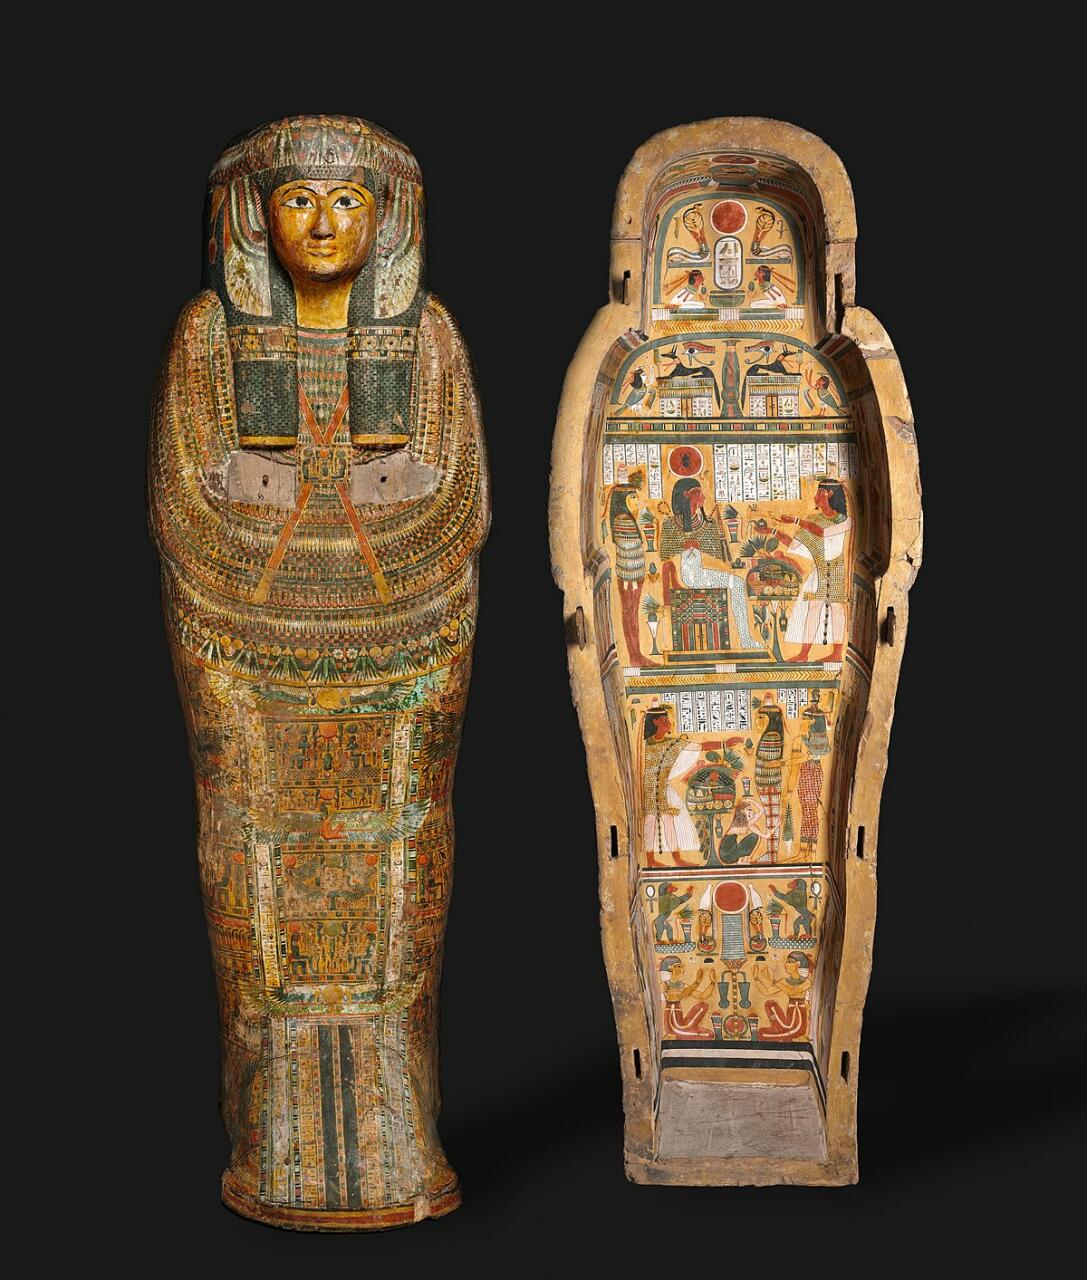 Археологи нашли статую самого могущественного фараона Египта спустя тысячи лет